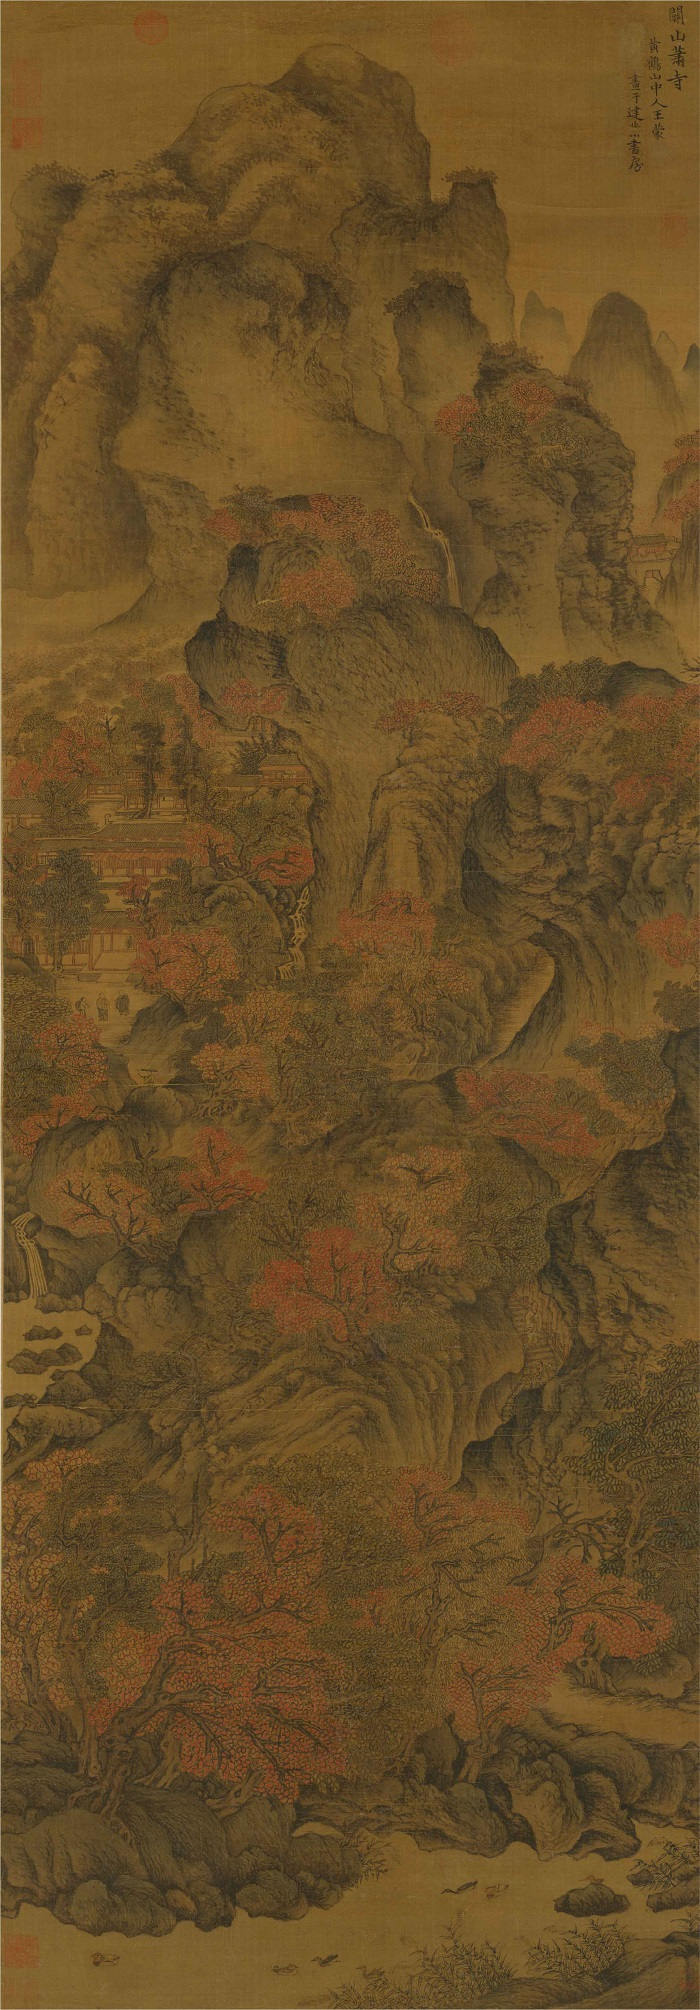 元 王蒙 《关山箫寺图轴》高清作品 161.7x56